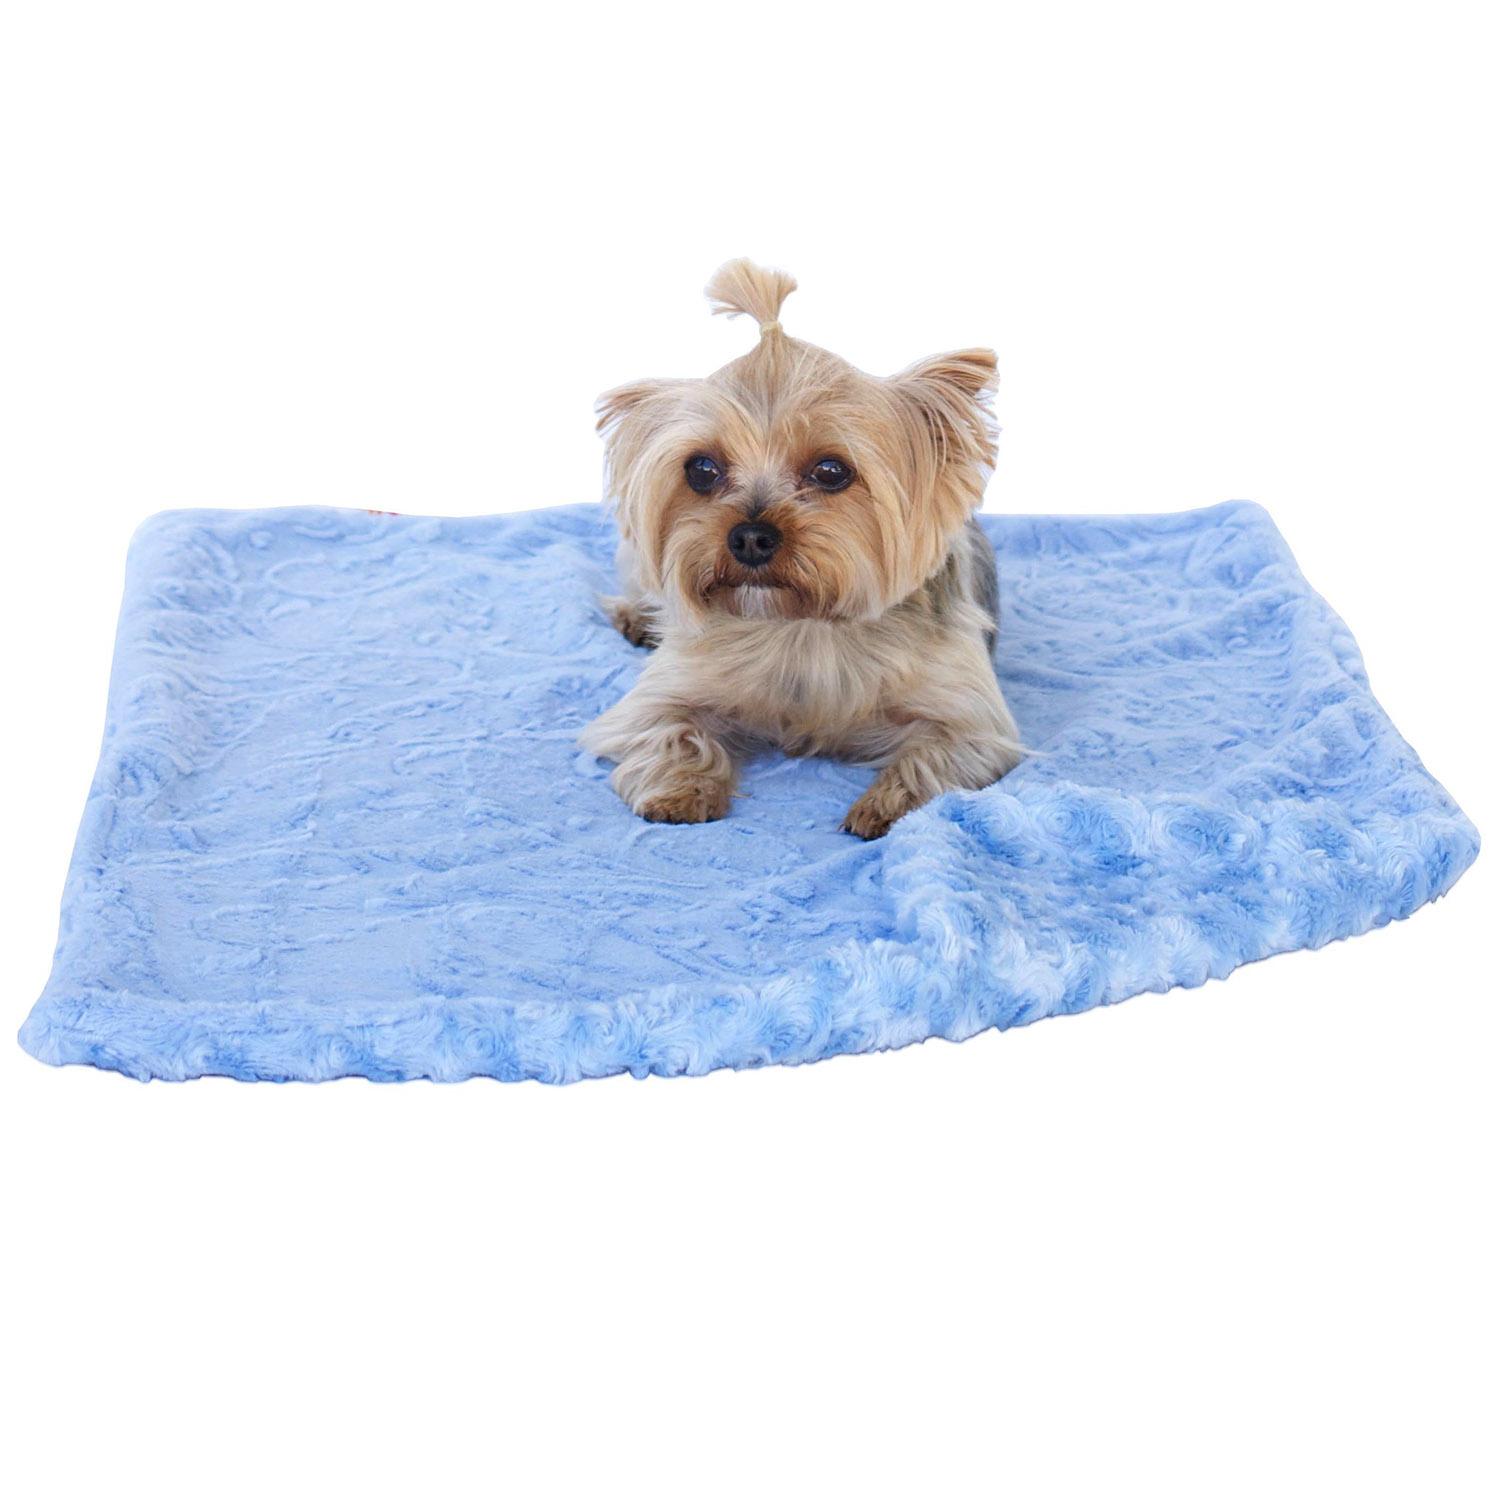 The Dog Squad Paisley Dog Blanket - Blue